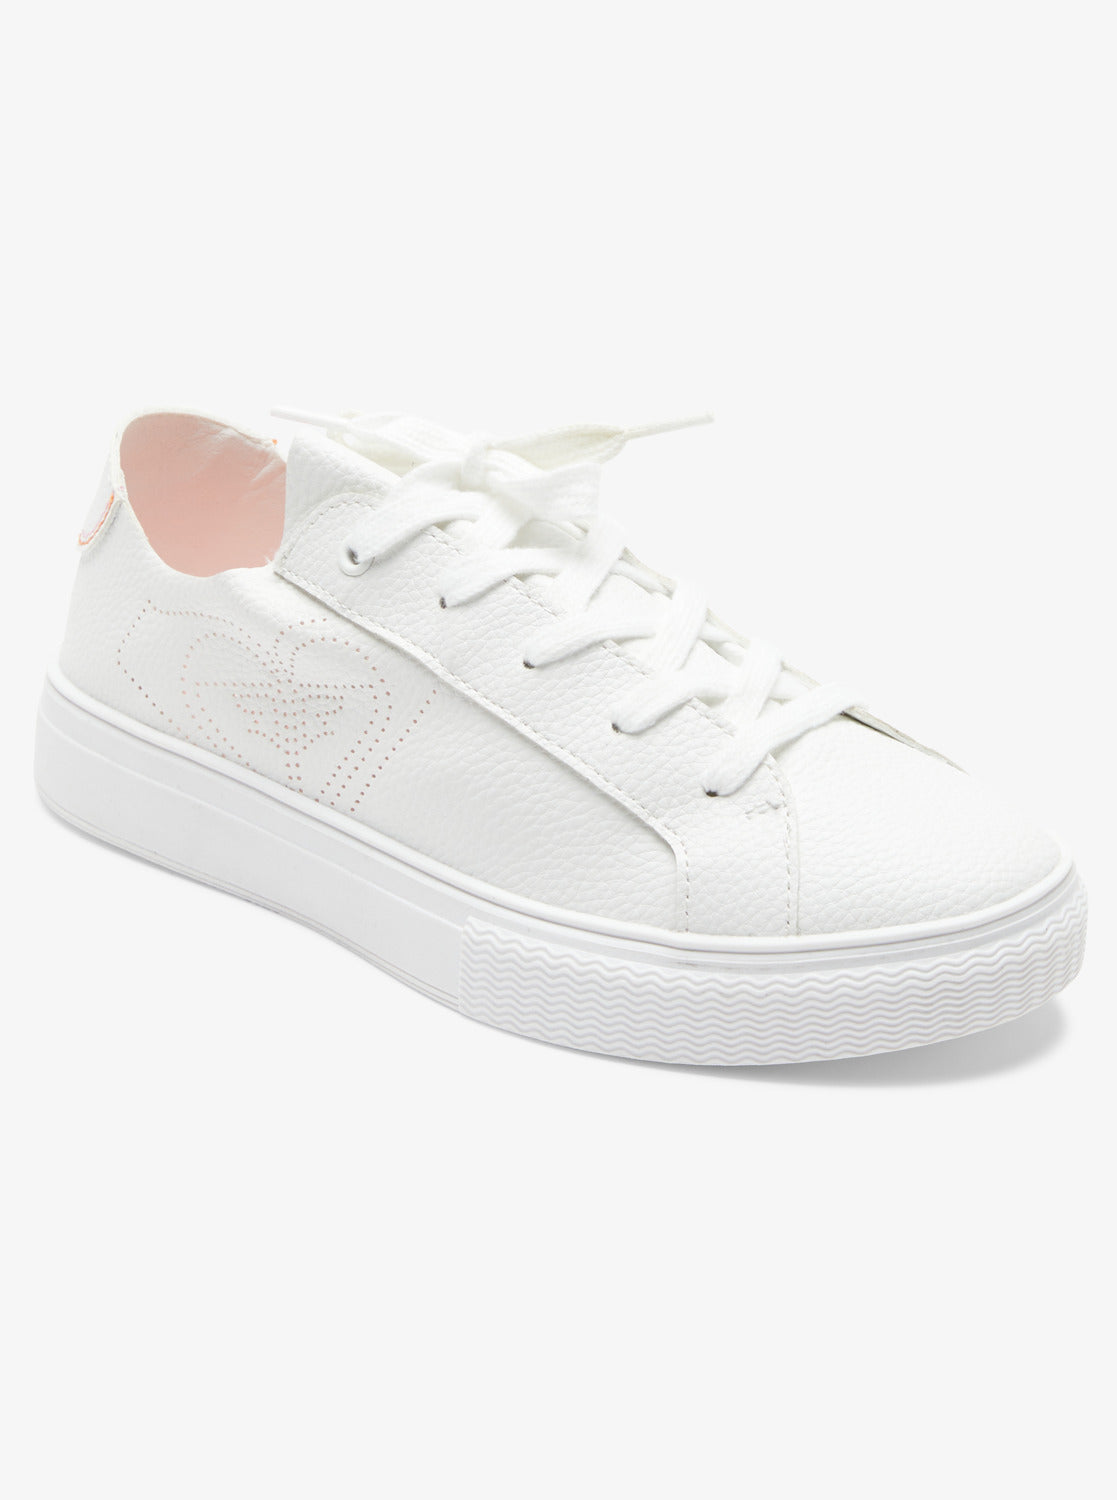 Coastal Cruisin Shoes - White